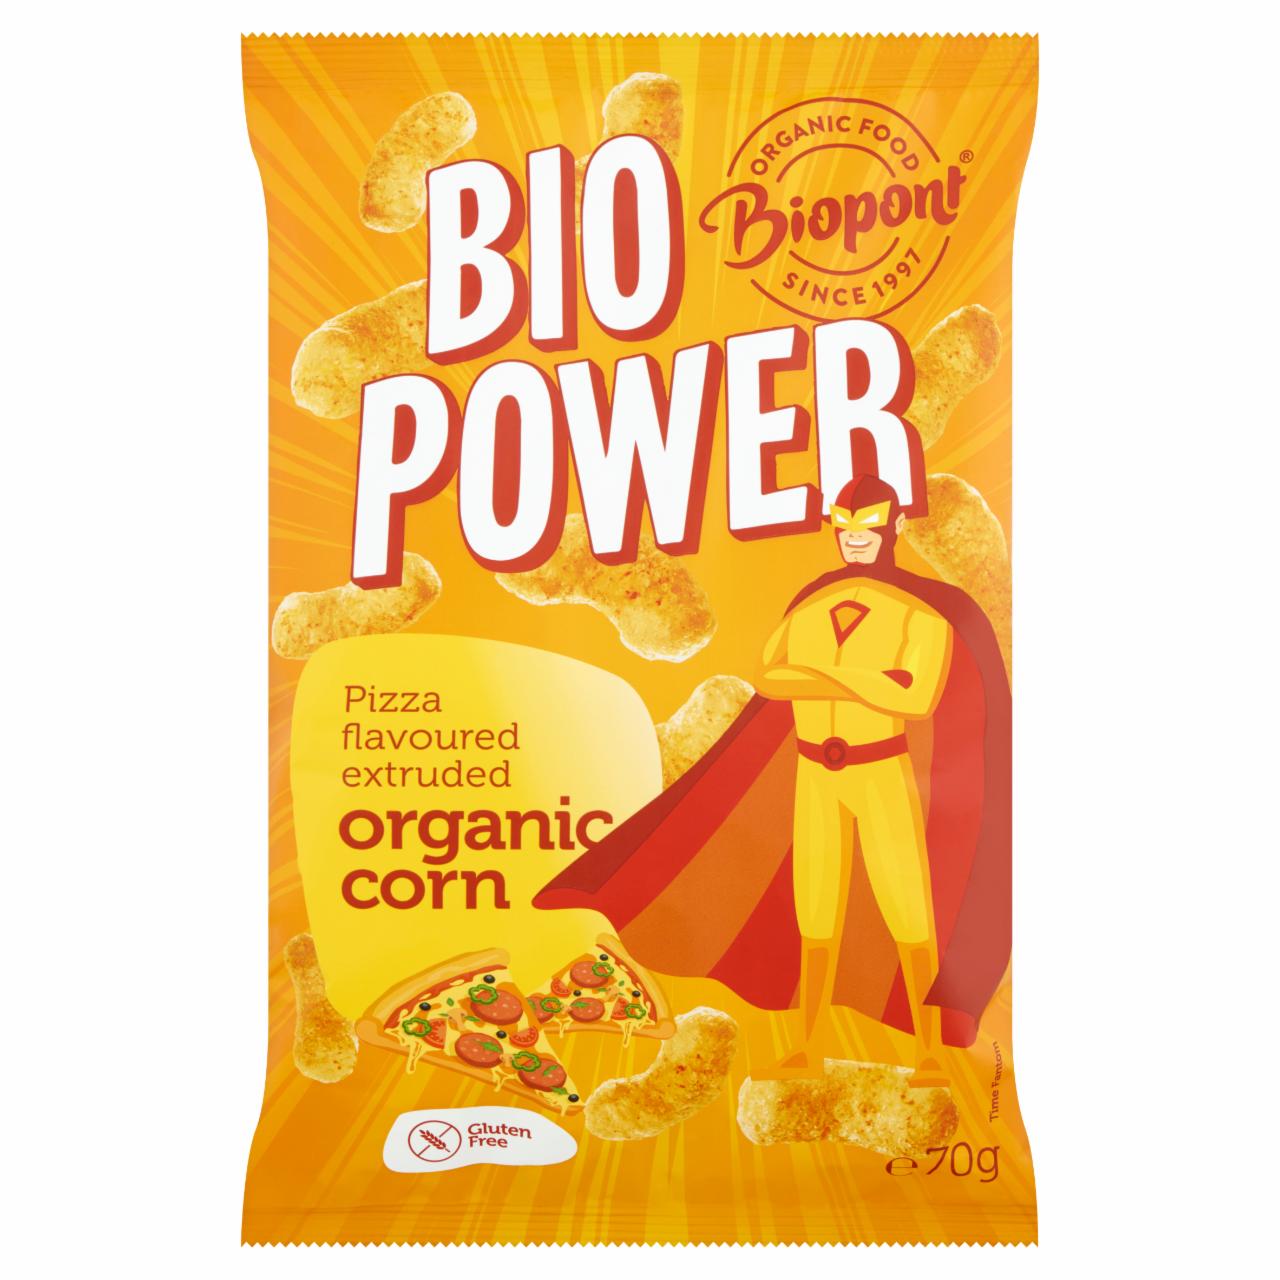 Képek - Biopont Bio Power gluténmentes, extrudált BIO kukorica pizza ízesítéssel 70 g